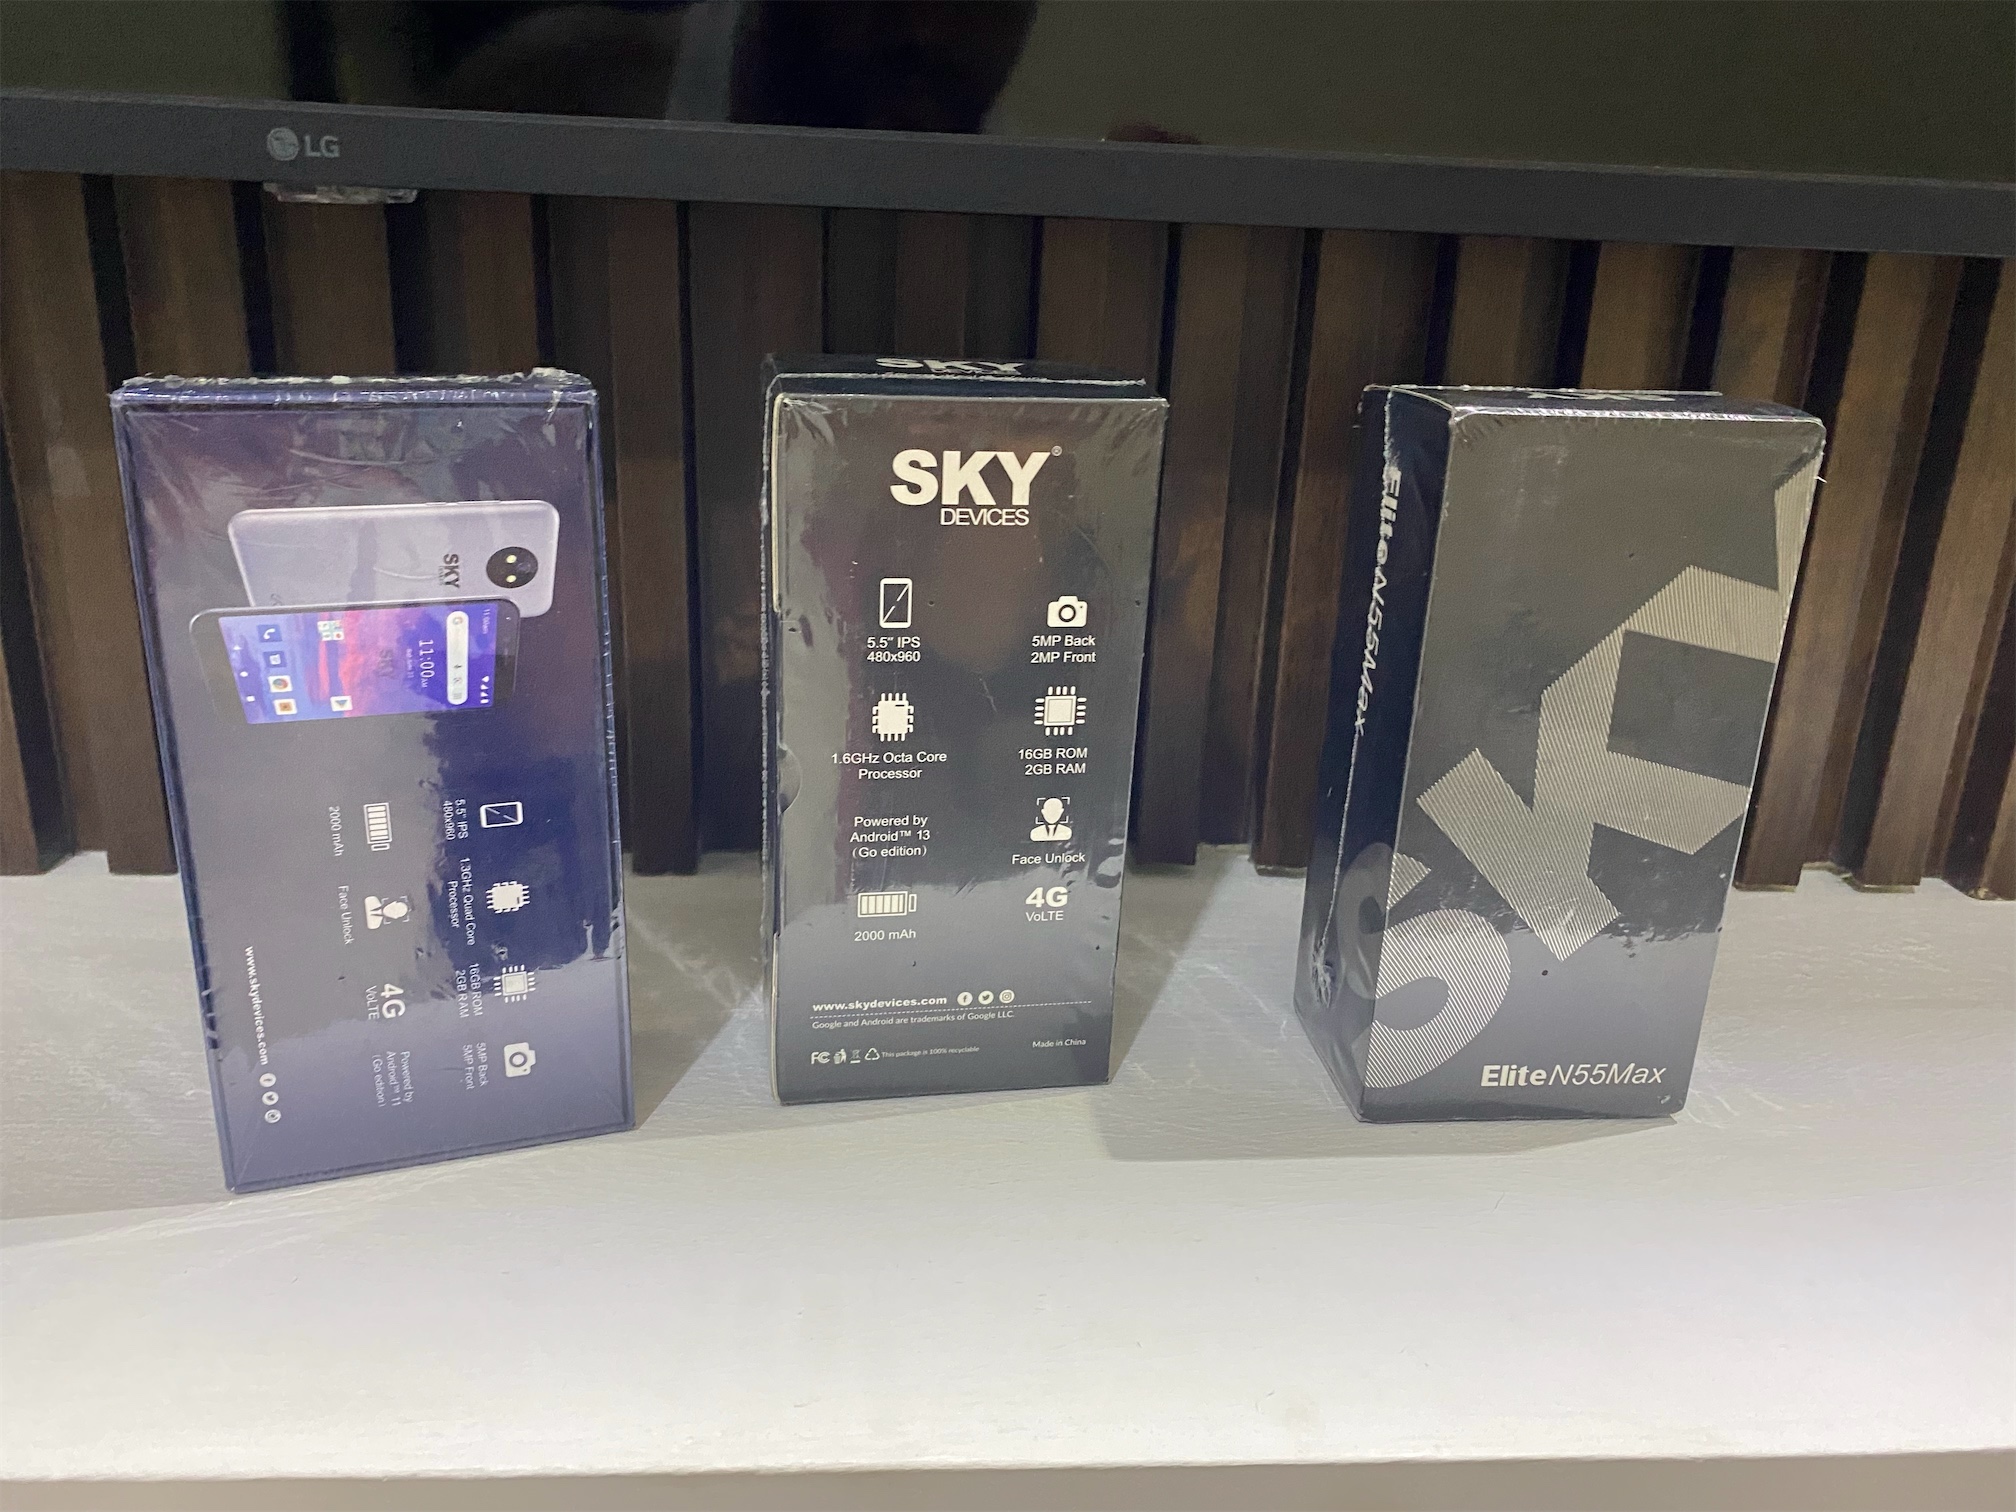 celulares y tabletas - Sky Devices Elite N55 MAX R55 1